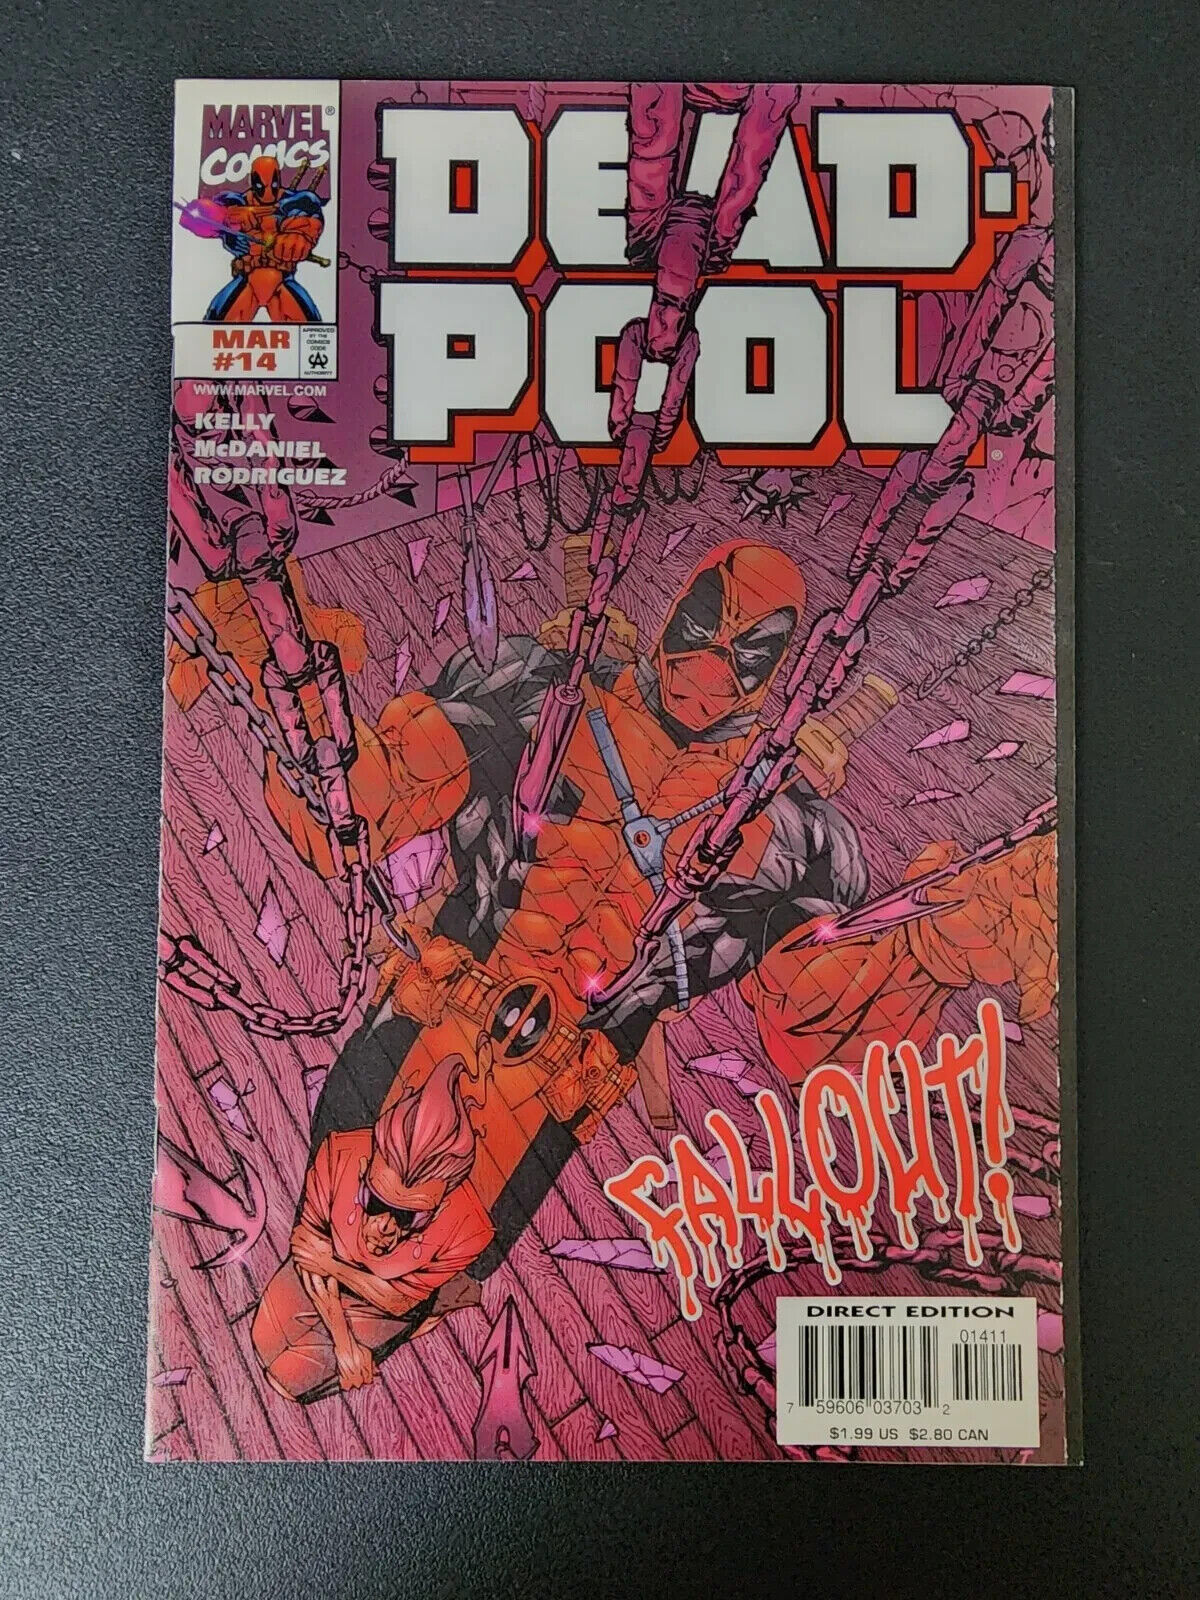 Marvel Comics Deadpool #14 March 1998 1st app of Ajax (Francis)